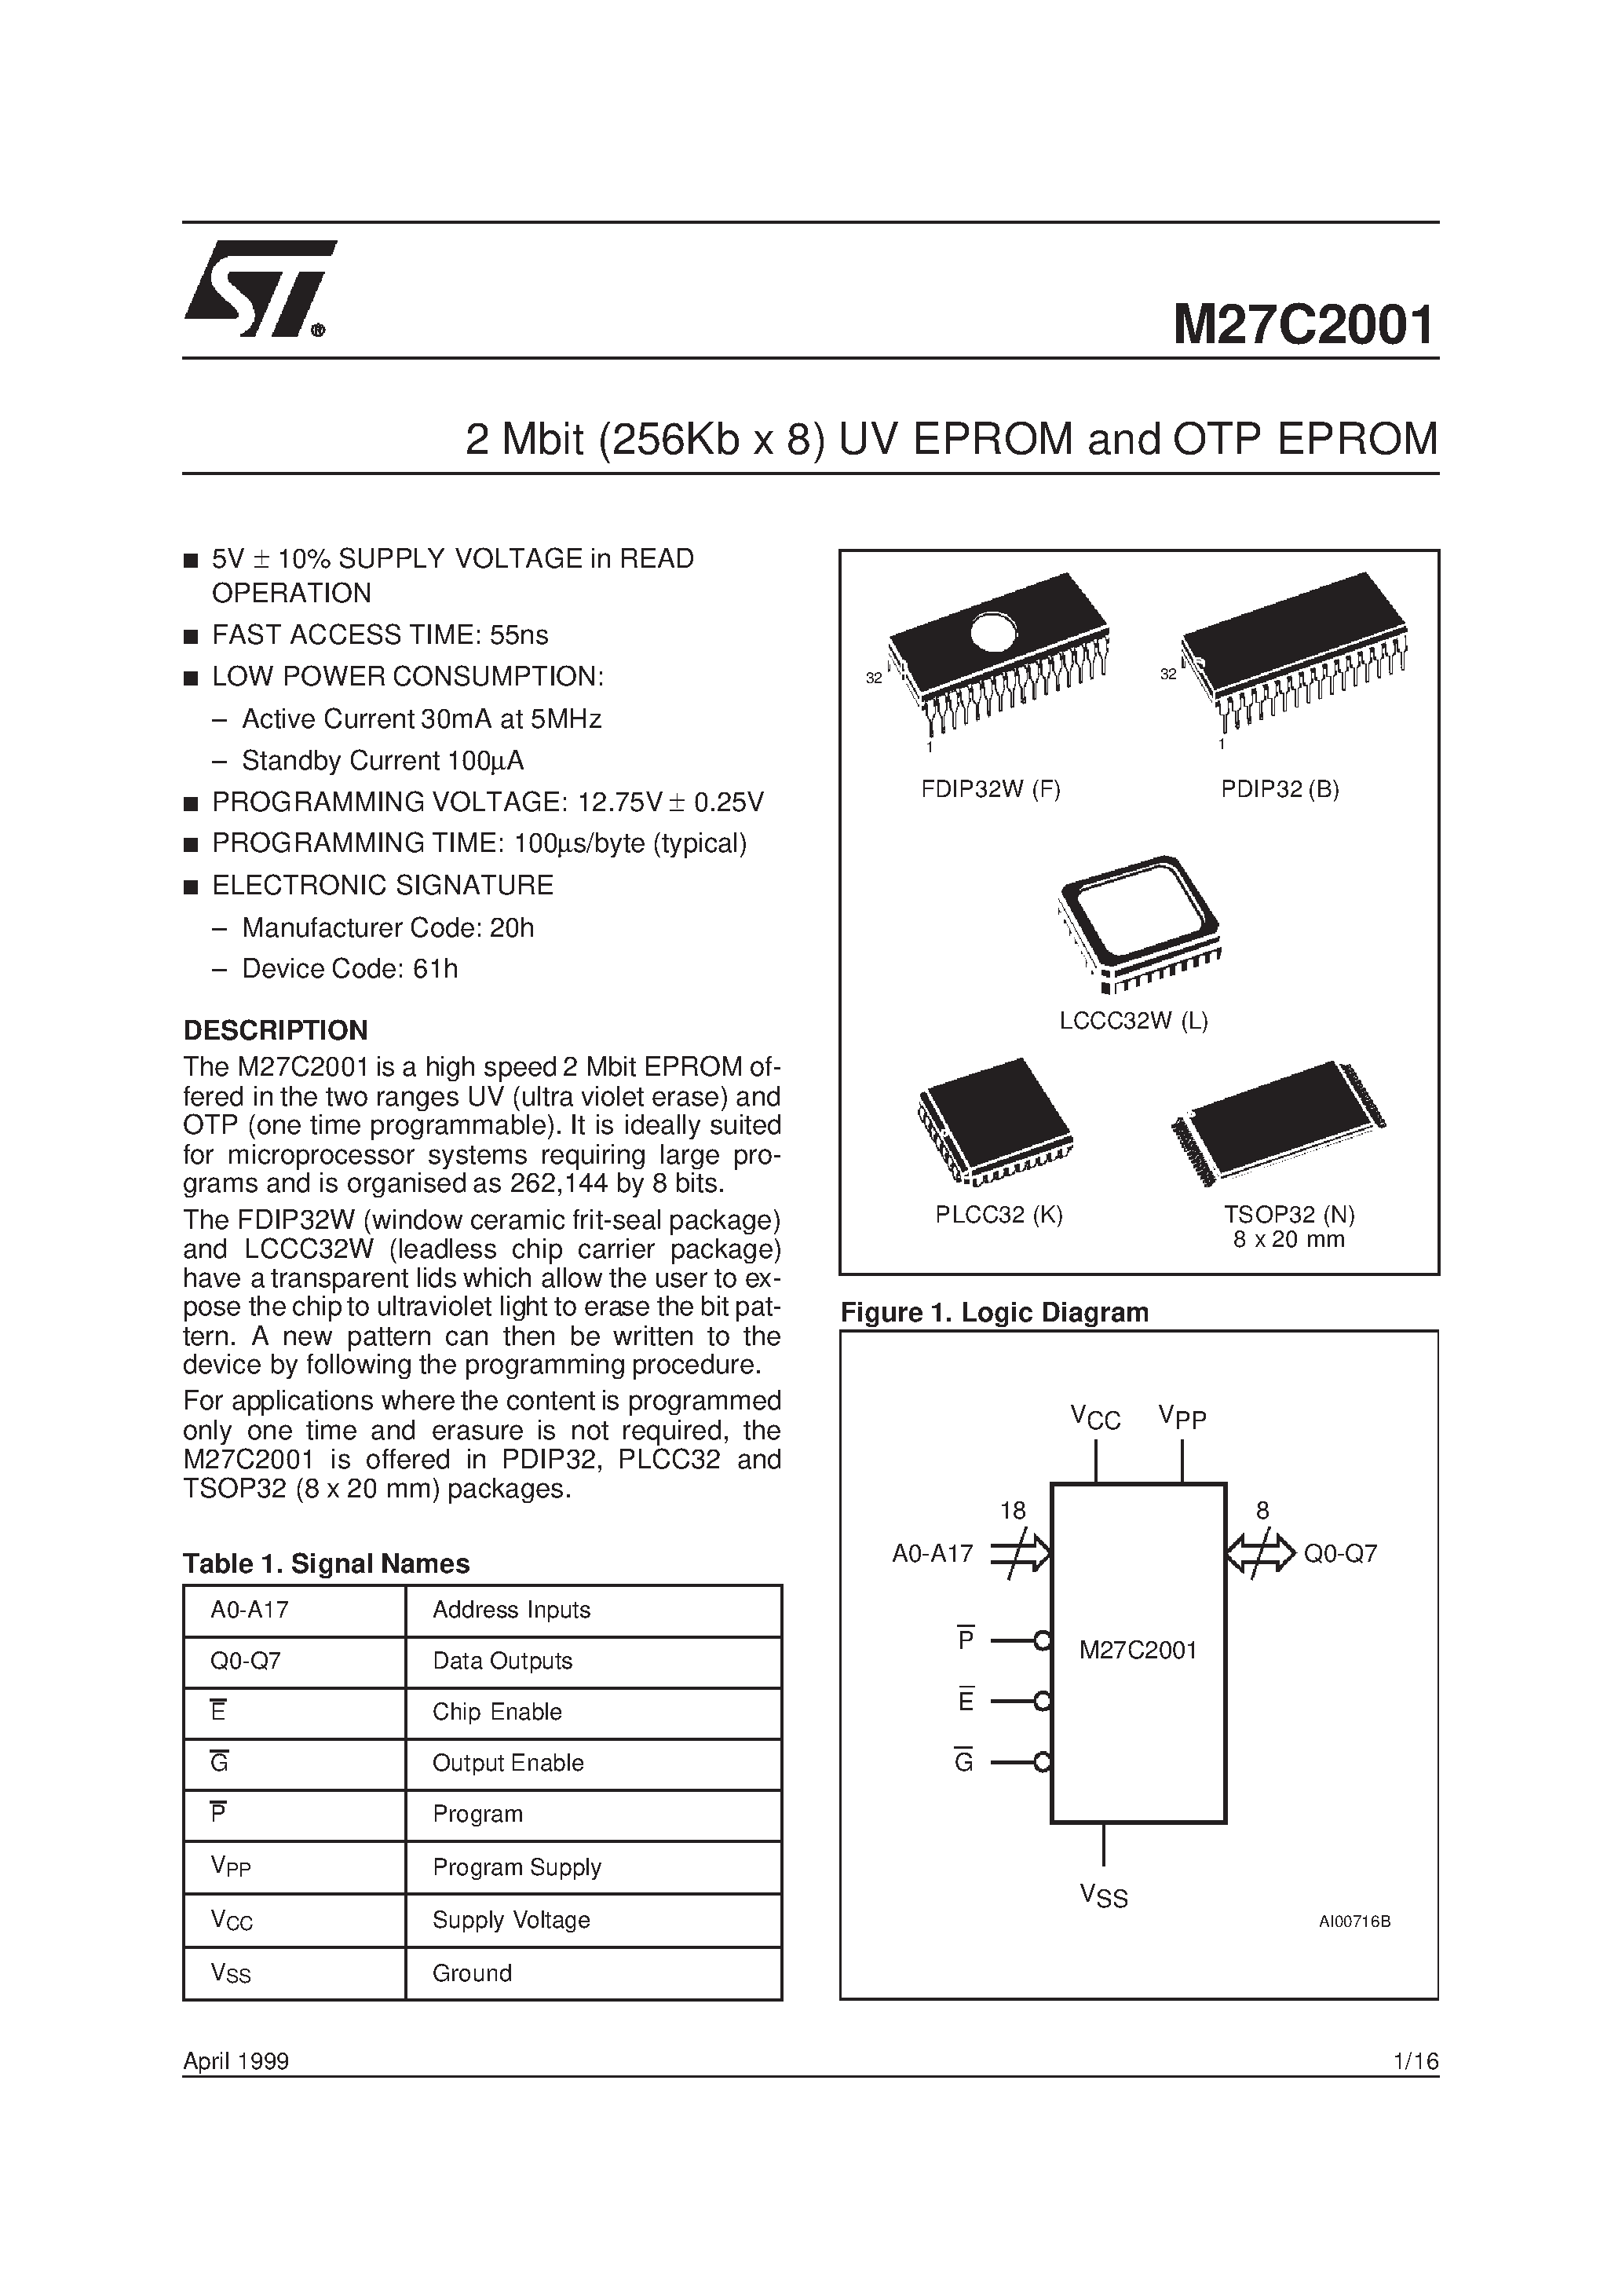 Datasheet M27C2001-10B6X - 2 Mbit 256Kb x 8 UV EPROM and OTP EPROM page 1